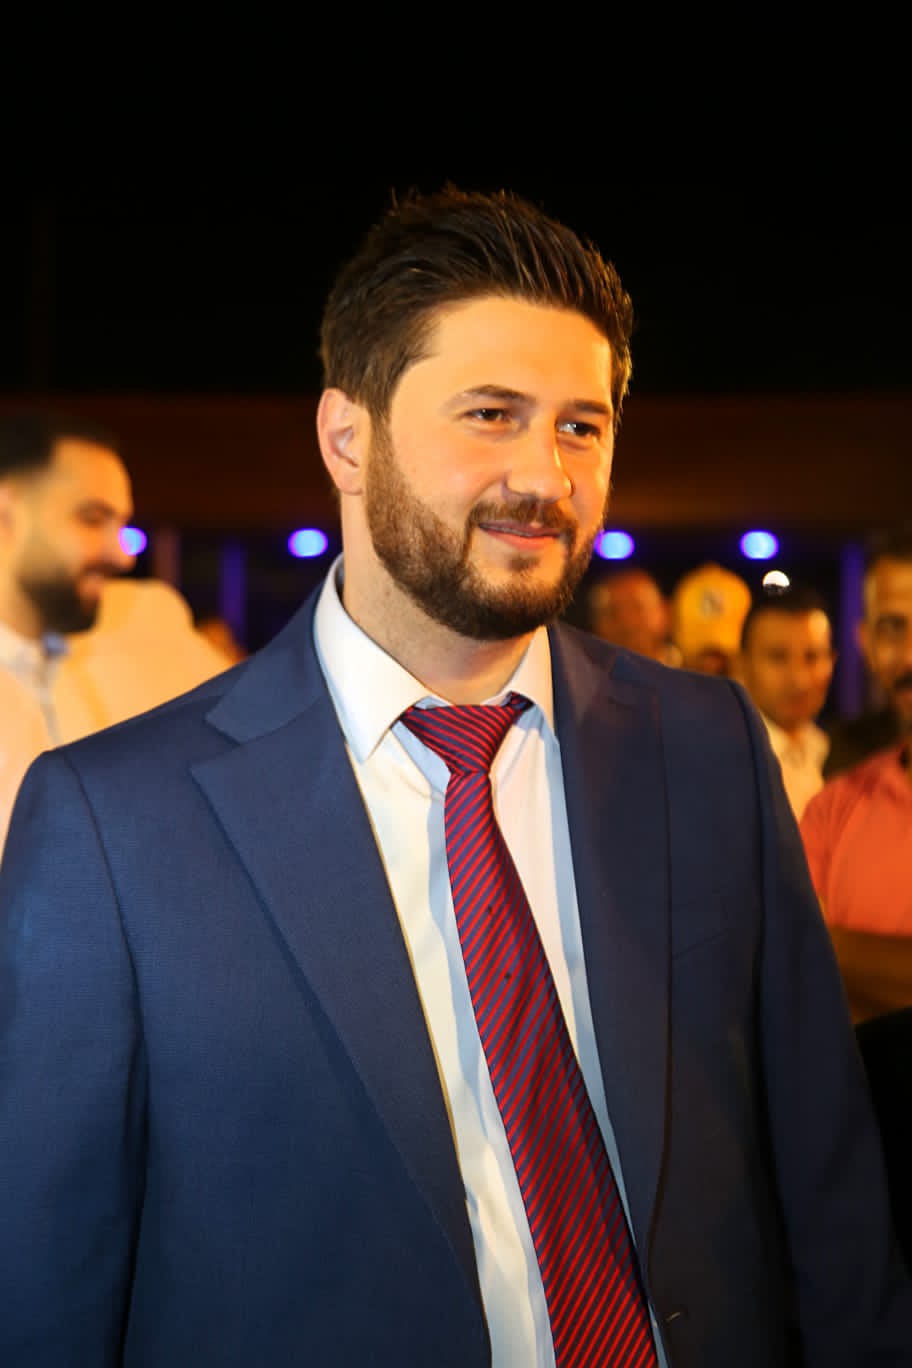 الصحفي ليث الفراية يهنئ رجل الأعمال زياد البغال بمناسبة زفاف نجله ياسين